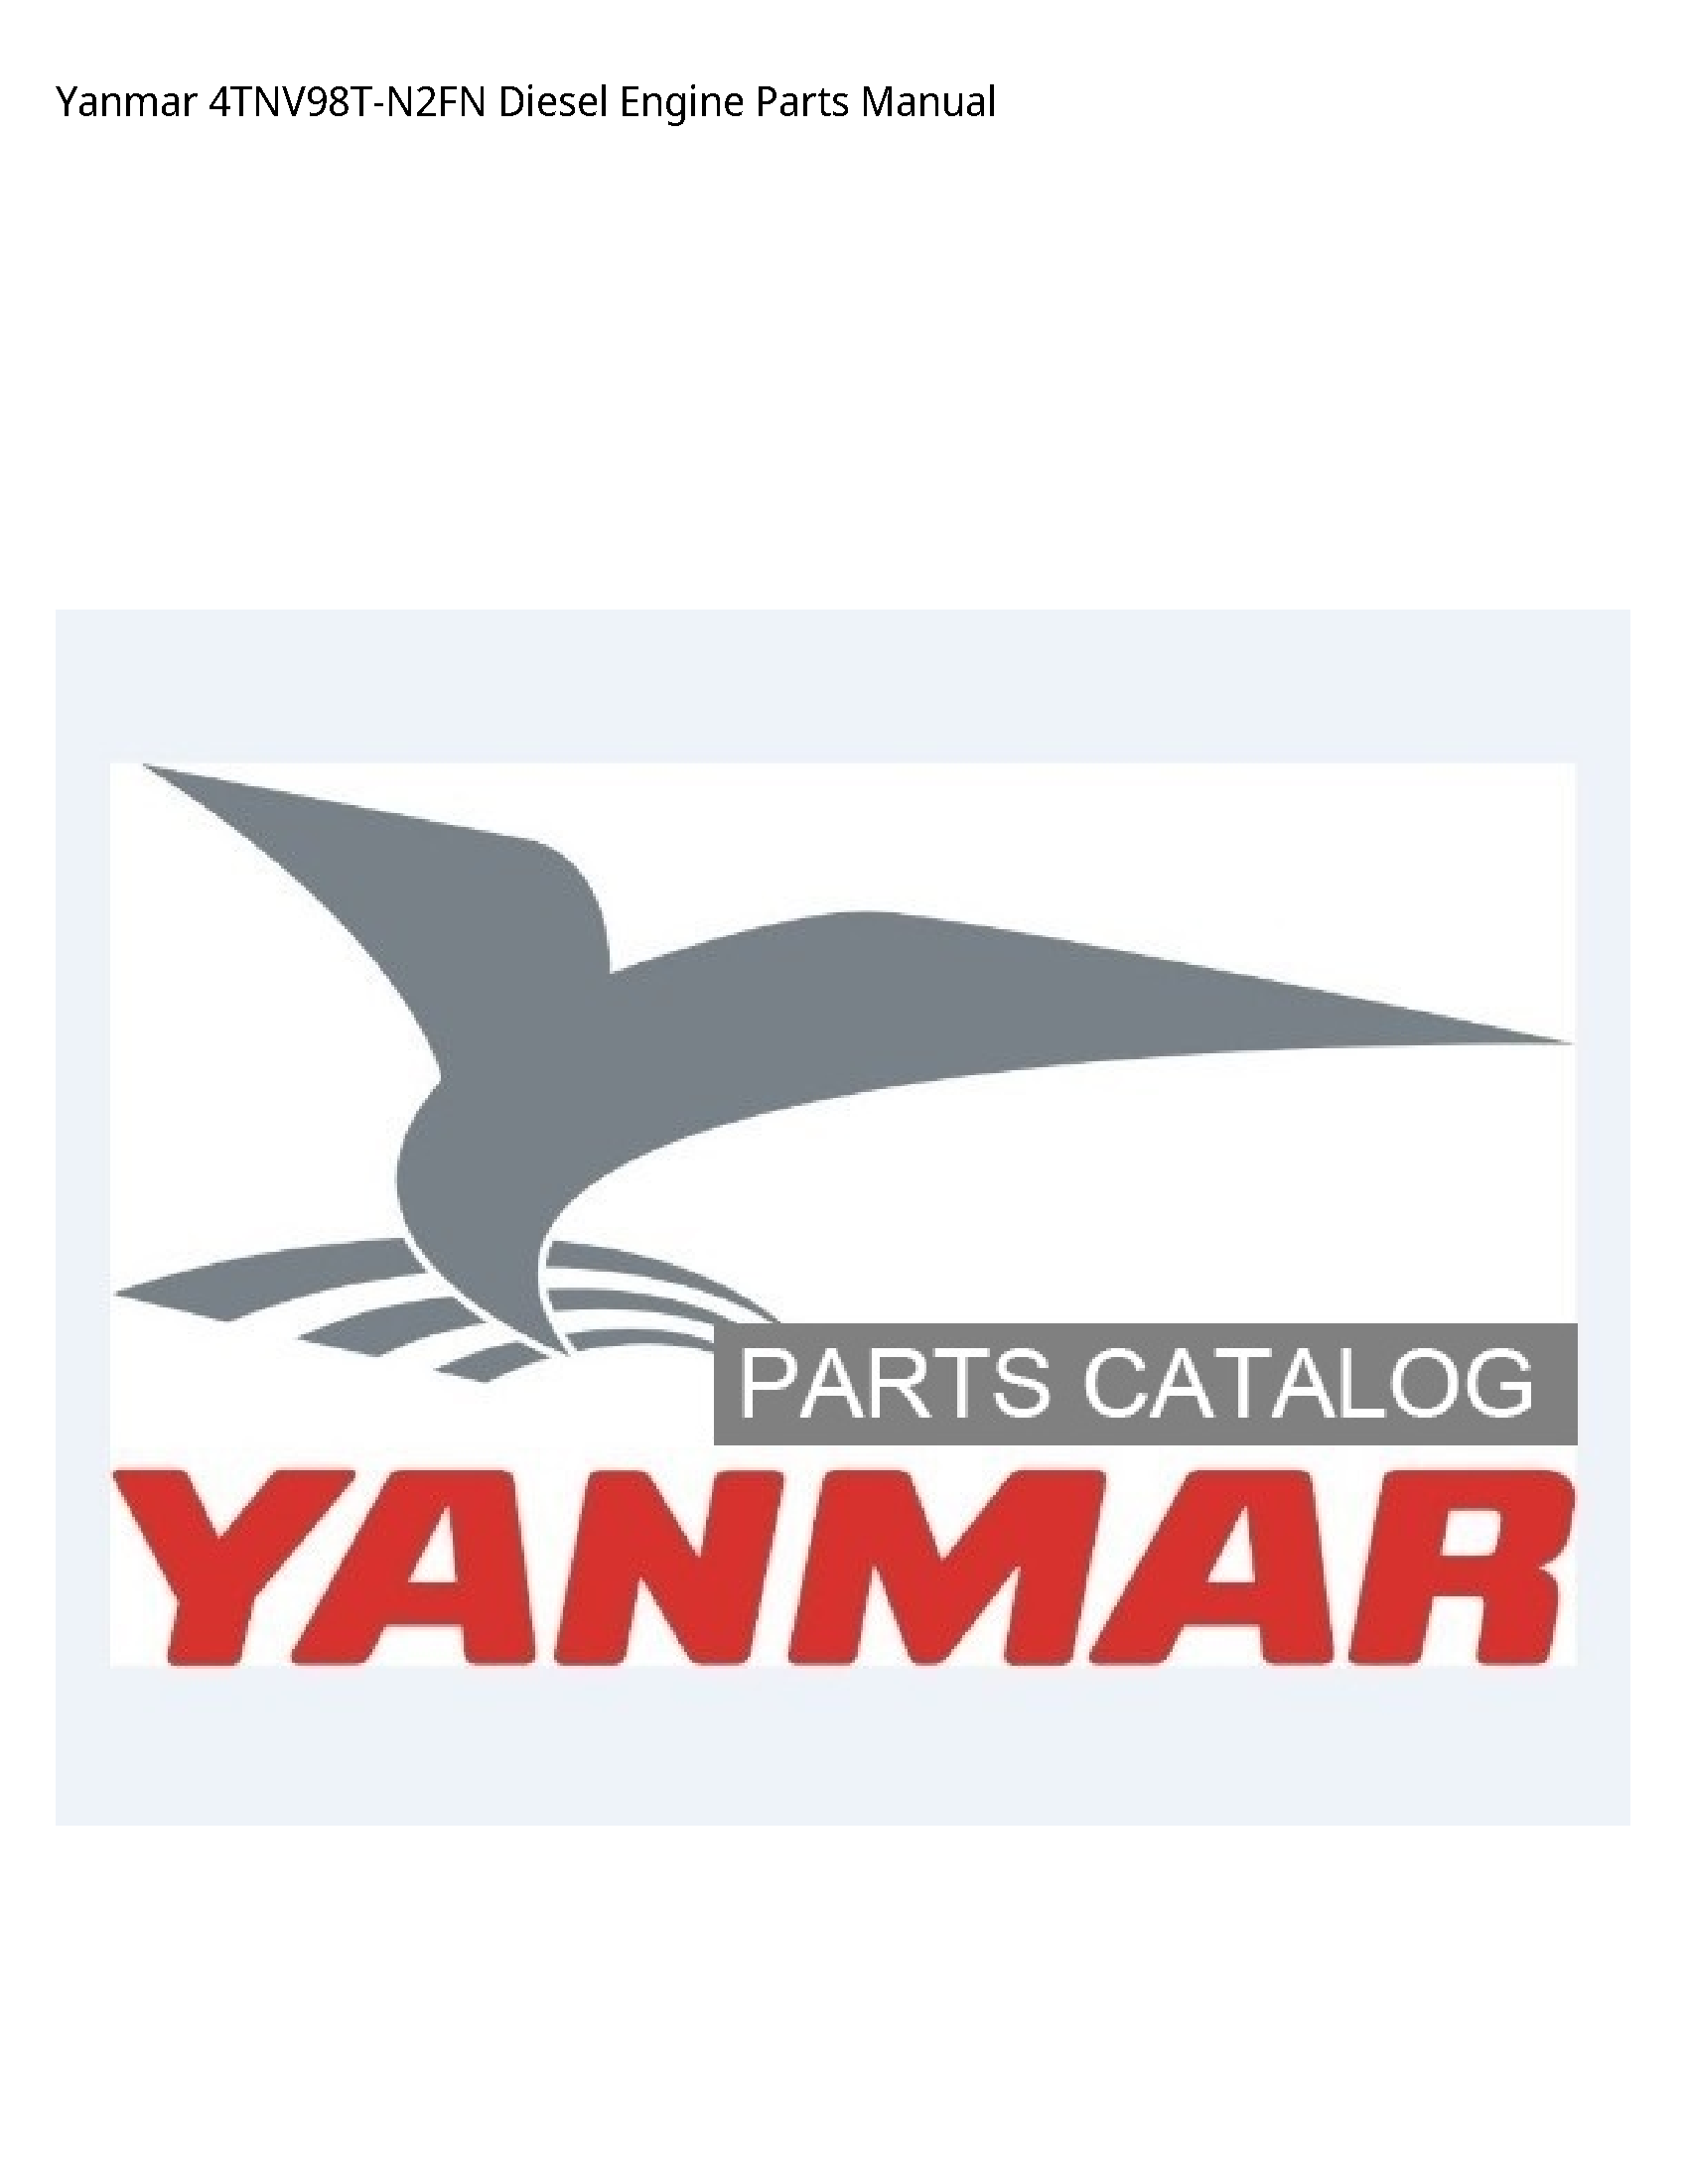 Yanmar 4TNV98T-N2FN Diesel Engine Parts manual